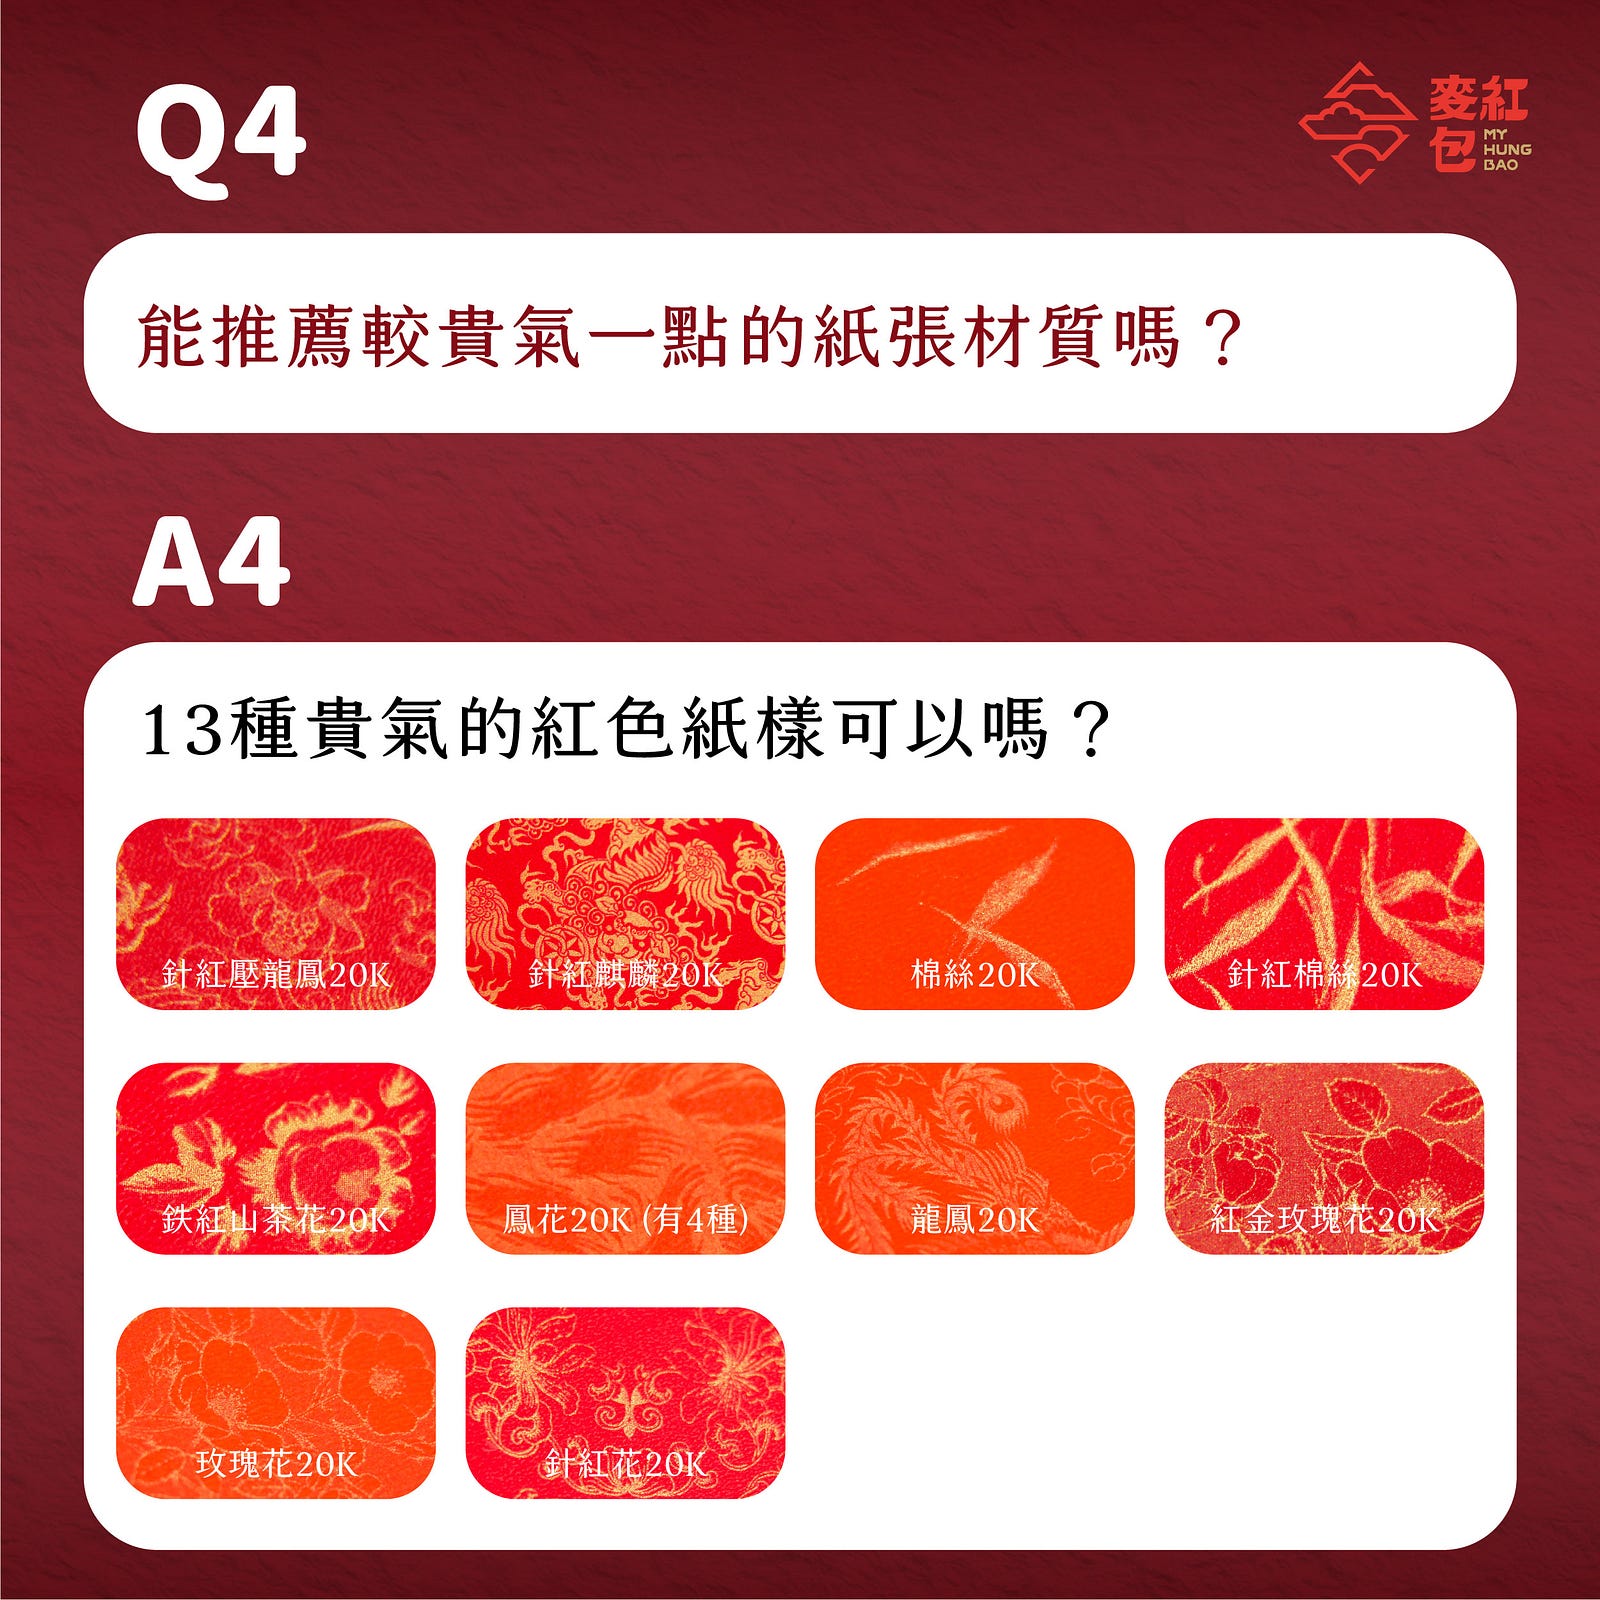 【印前Q&A】網友最常問的10個紅包印製問題-Q4：能推薦較貴氣一點的紙張材質嗎？